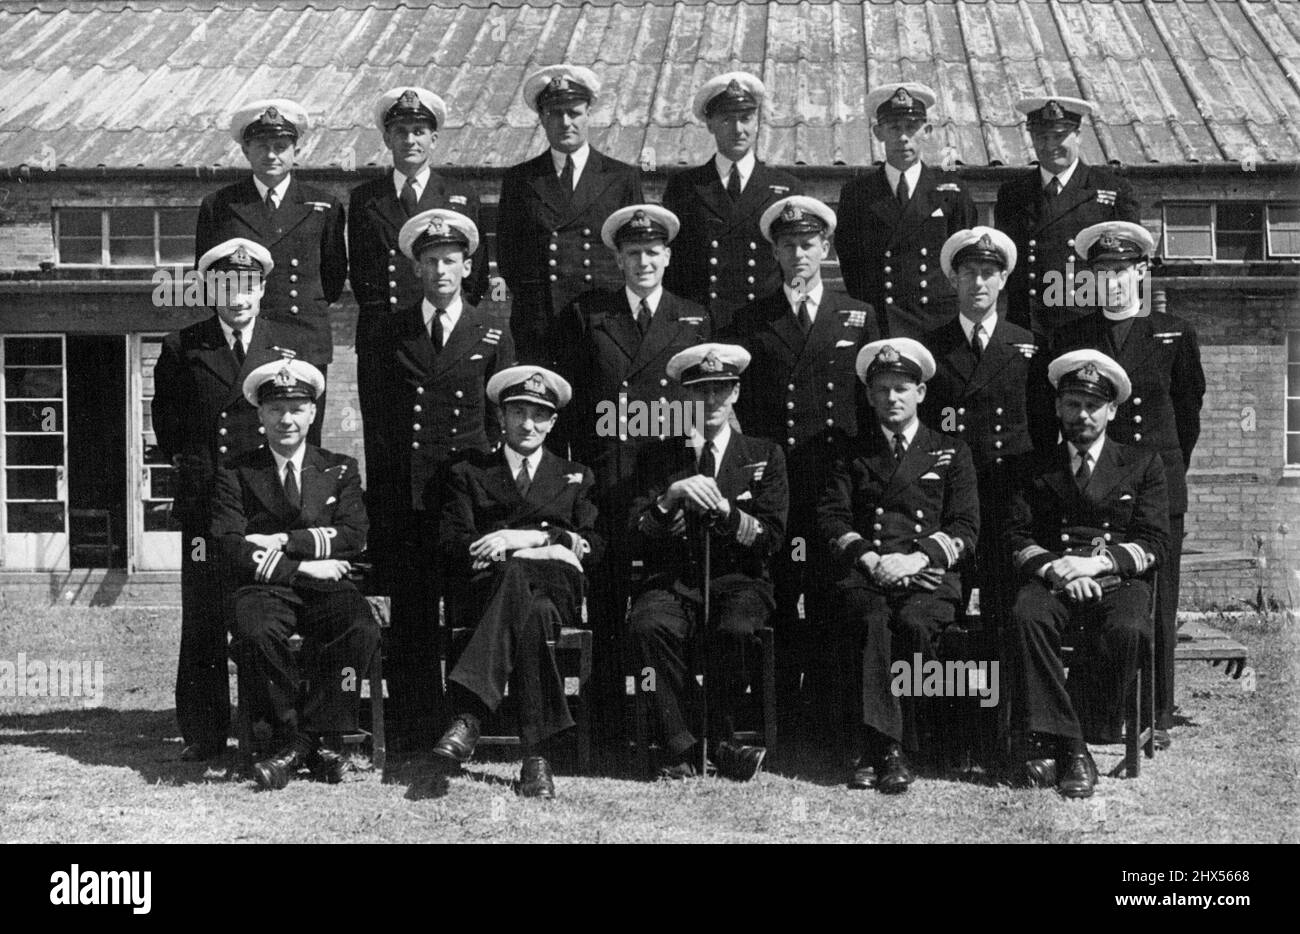 LT. Mount Batten an der P.O. Schule - Lieut. Philip Mountbatten, R.N., abgebildet mit Mitoffizieren der Royal Naval Petty Officers' School, Kingsmoor, Corsham, Wilts.Front Row, von links nach rechts: Lieut CDR. J.C. Ogle, DSC, CDR. A.D.H.Jay, DSO, DSC & Bar; Captain H.W.Biggs, DSD & Bar, Lt. Cdr. R.G. Jennins, OBE, DSC, Lieut. Cdr. P.J. Hoare.zweite Reihe, von links nach rechts; LT. CDR. P.R.G., DSC, LT.CDR.W.D.O'Brien, DSC, Inst.LT .K.R.G. Suckling, LT. Philip Mountbatten, LT. E. G. Mason, Rev. B.N. Kennedy.Third Row, Left to Right: LT. (E) A.L. Green, Herr A.G.Samuel, (CD.GNR), Herr E. Wheldrake (Cd.Bosun), Stockfoto